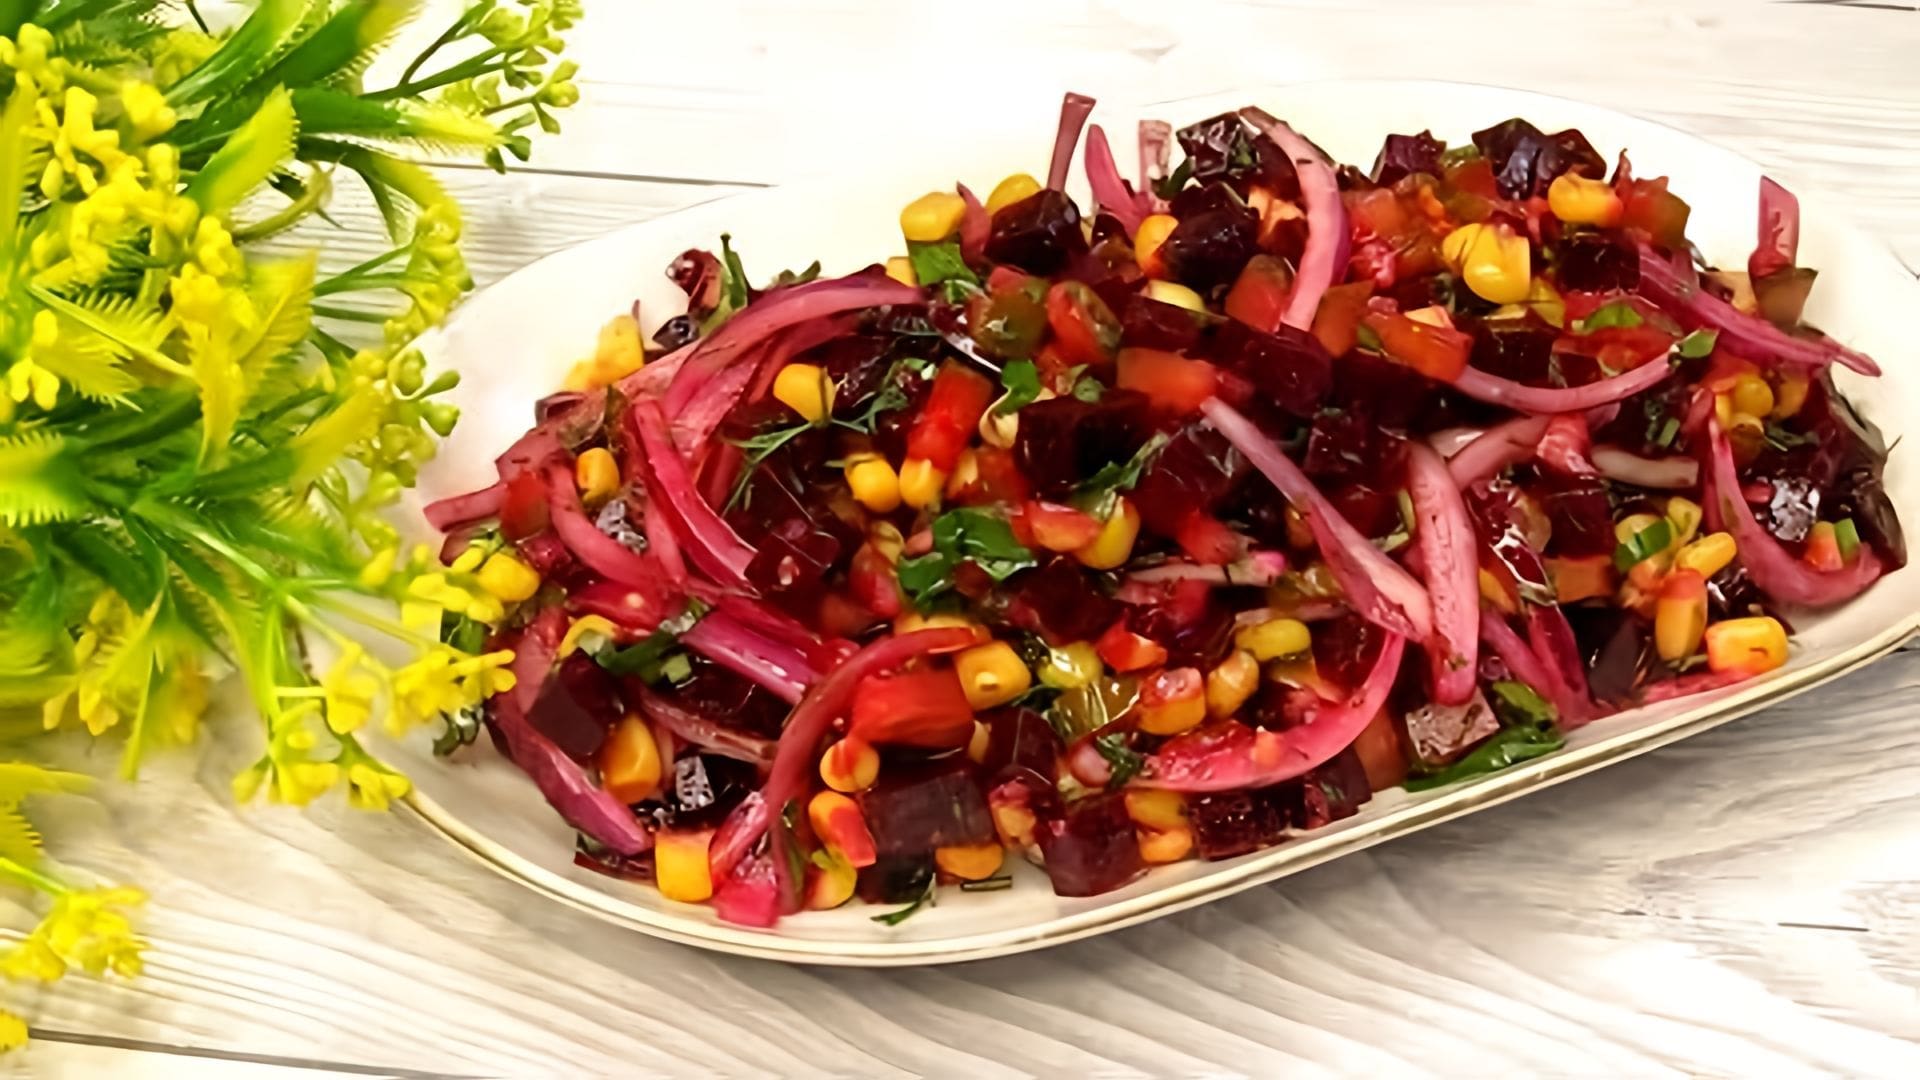 Видео: Лёгкий и полезный, простой салат из свёклы! Никогда не надоест его есть!